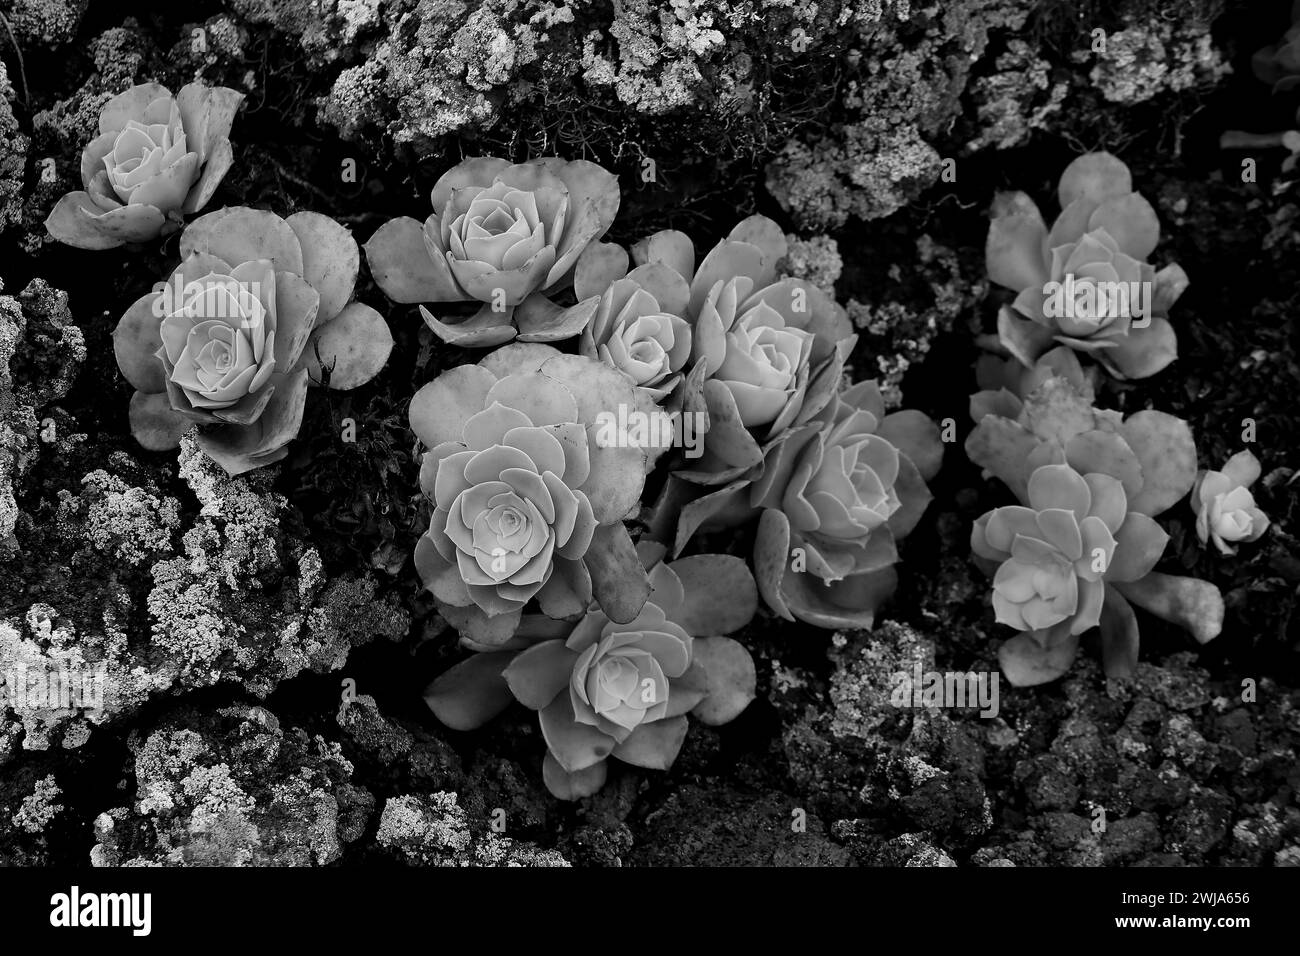 Image en noir et blanc de plantes succulentes avec un motif de rosette, niché parmi les textures rocheuses Banque D'Images